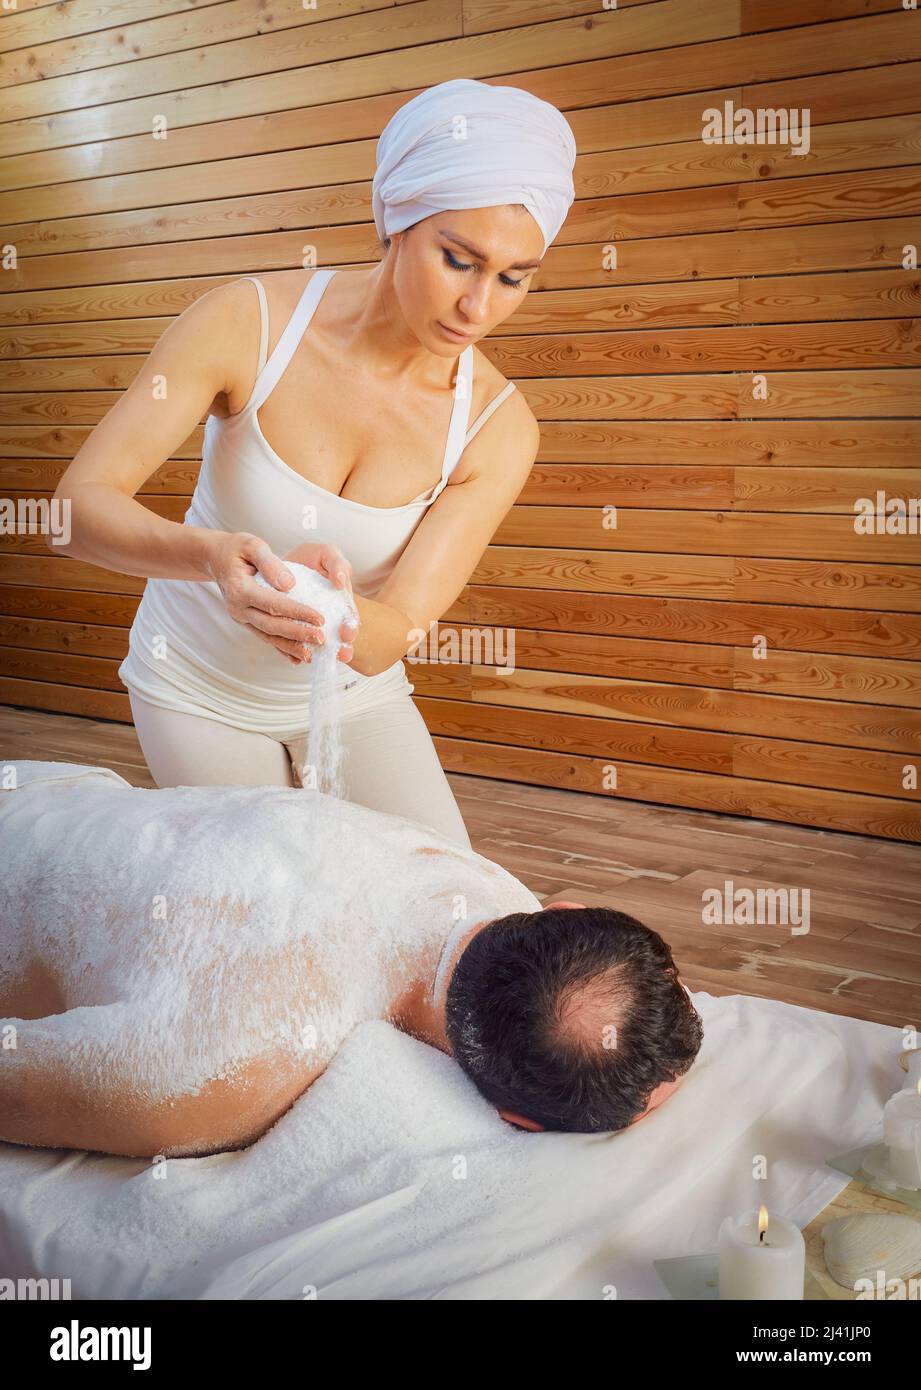 Eine Heilerin führt ein Ritual mit Salz durch, gießt Salz auf den Rücken eines Lügenmannes. Entspannung. Stockfoto